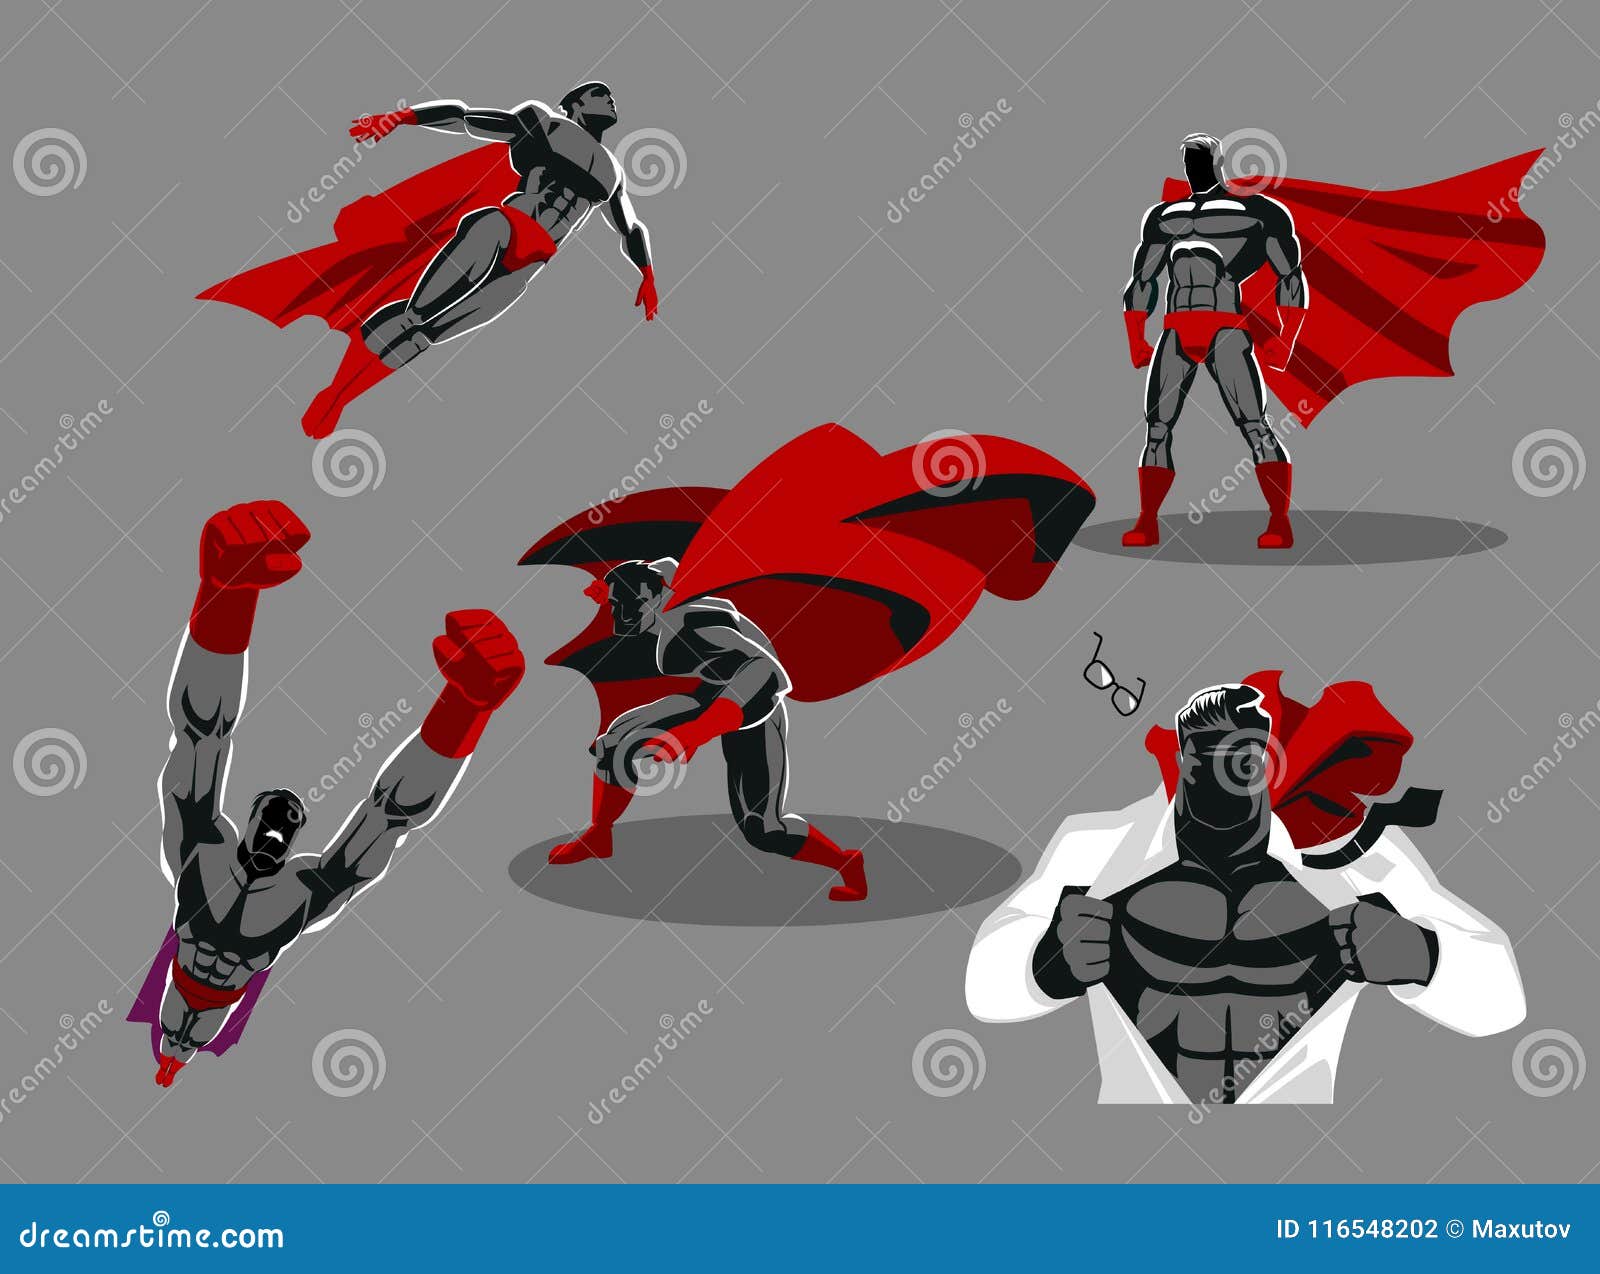 Captain America Cartoon Fighting Pose 3D - TurboSquid 2056145